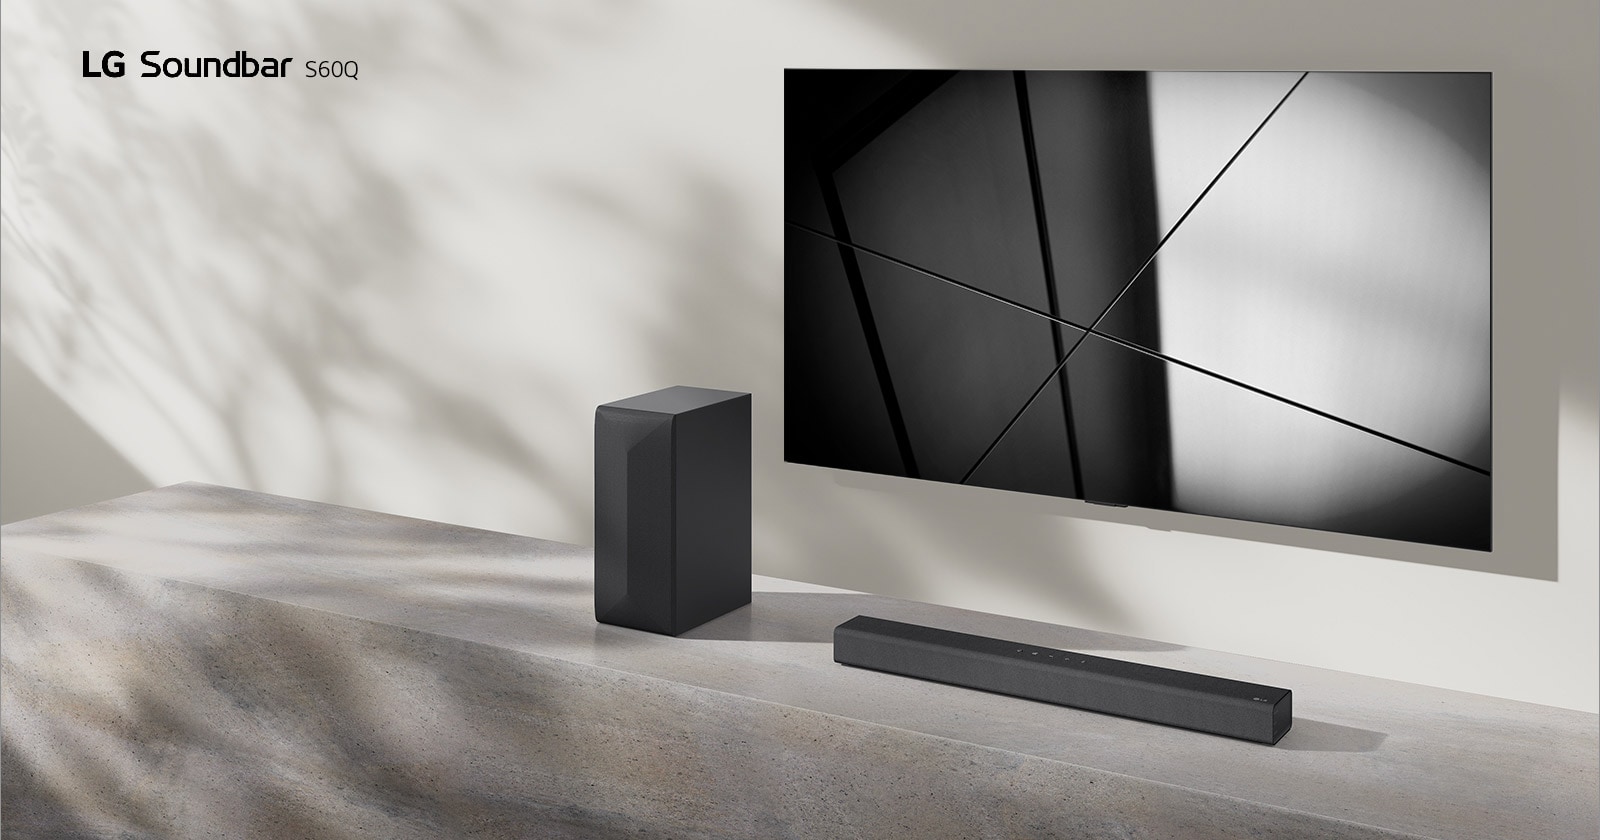 LG Sound Bar S65Q i LG TV nalaze se zajedno u dnevnoj sobi. TV je uključen i prikazuje crno-bijelu sliku.